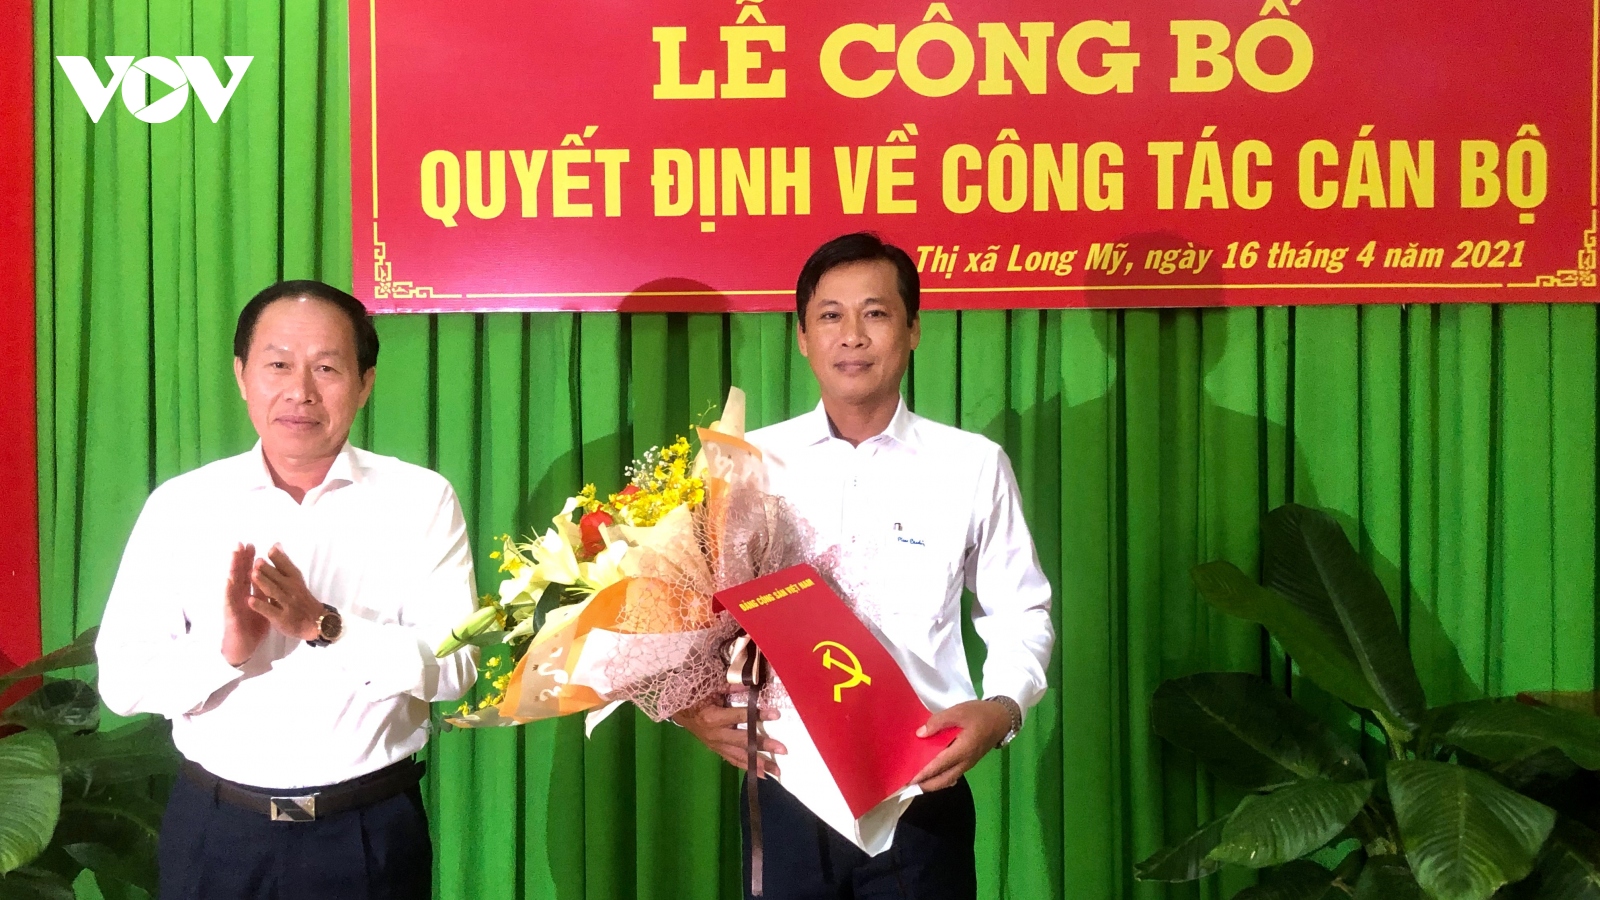  Ông Võ Văn Trung giữ chức Bí thư Thị ủy Long Mỹ, tỉnh Hậu Giang